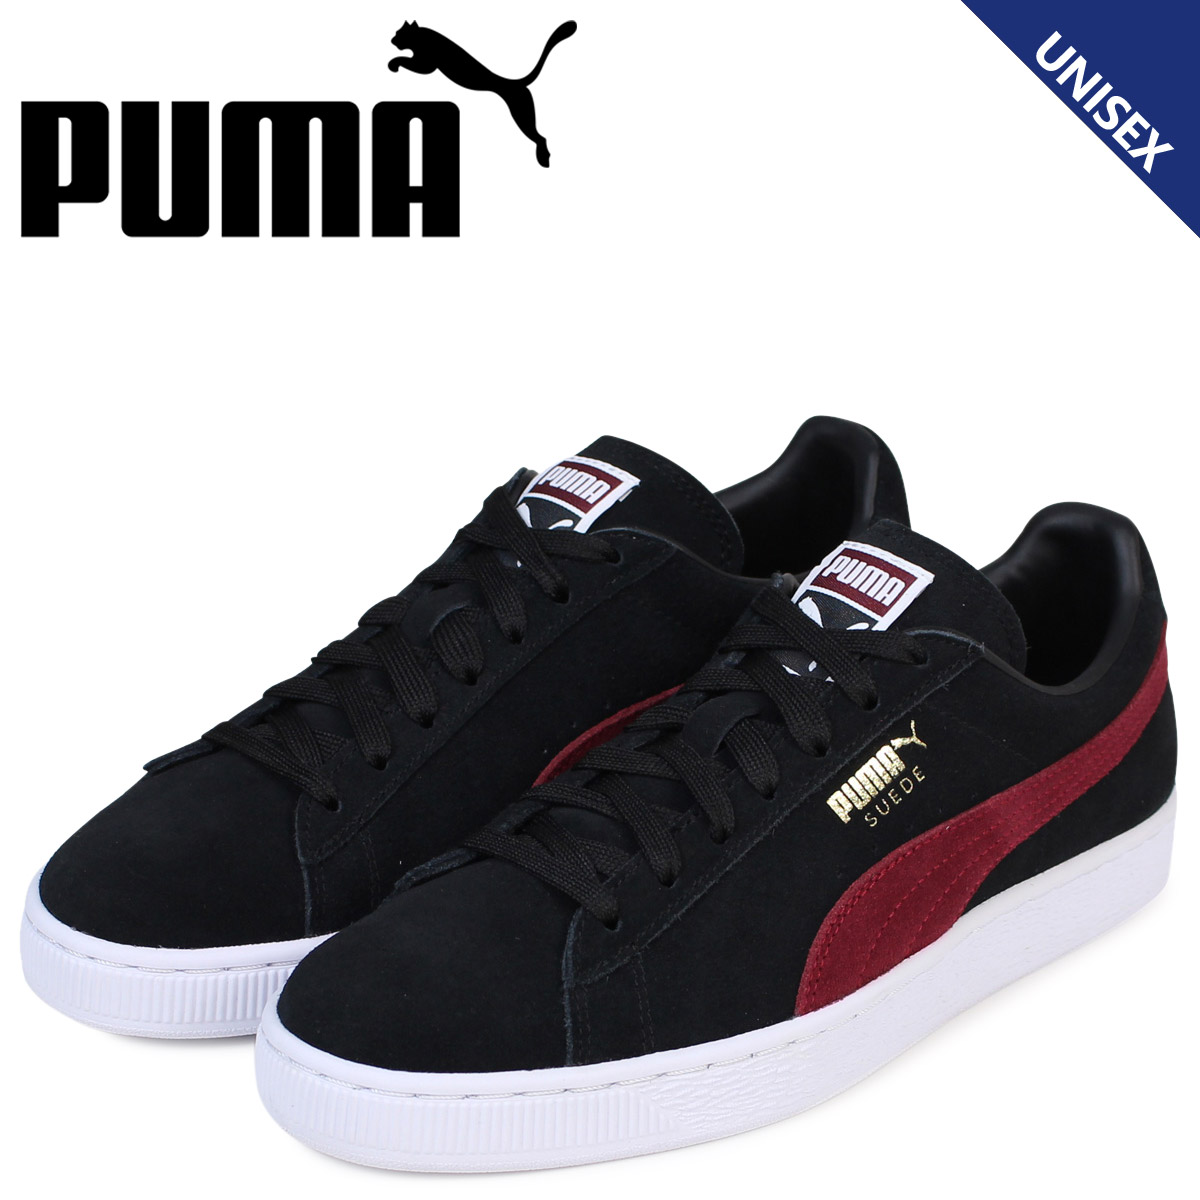 puma shoes online shop